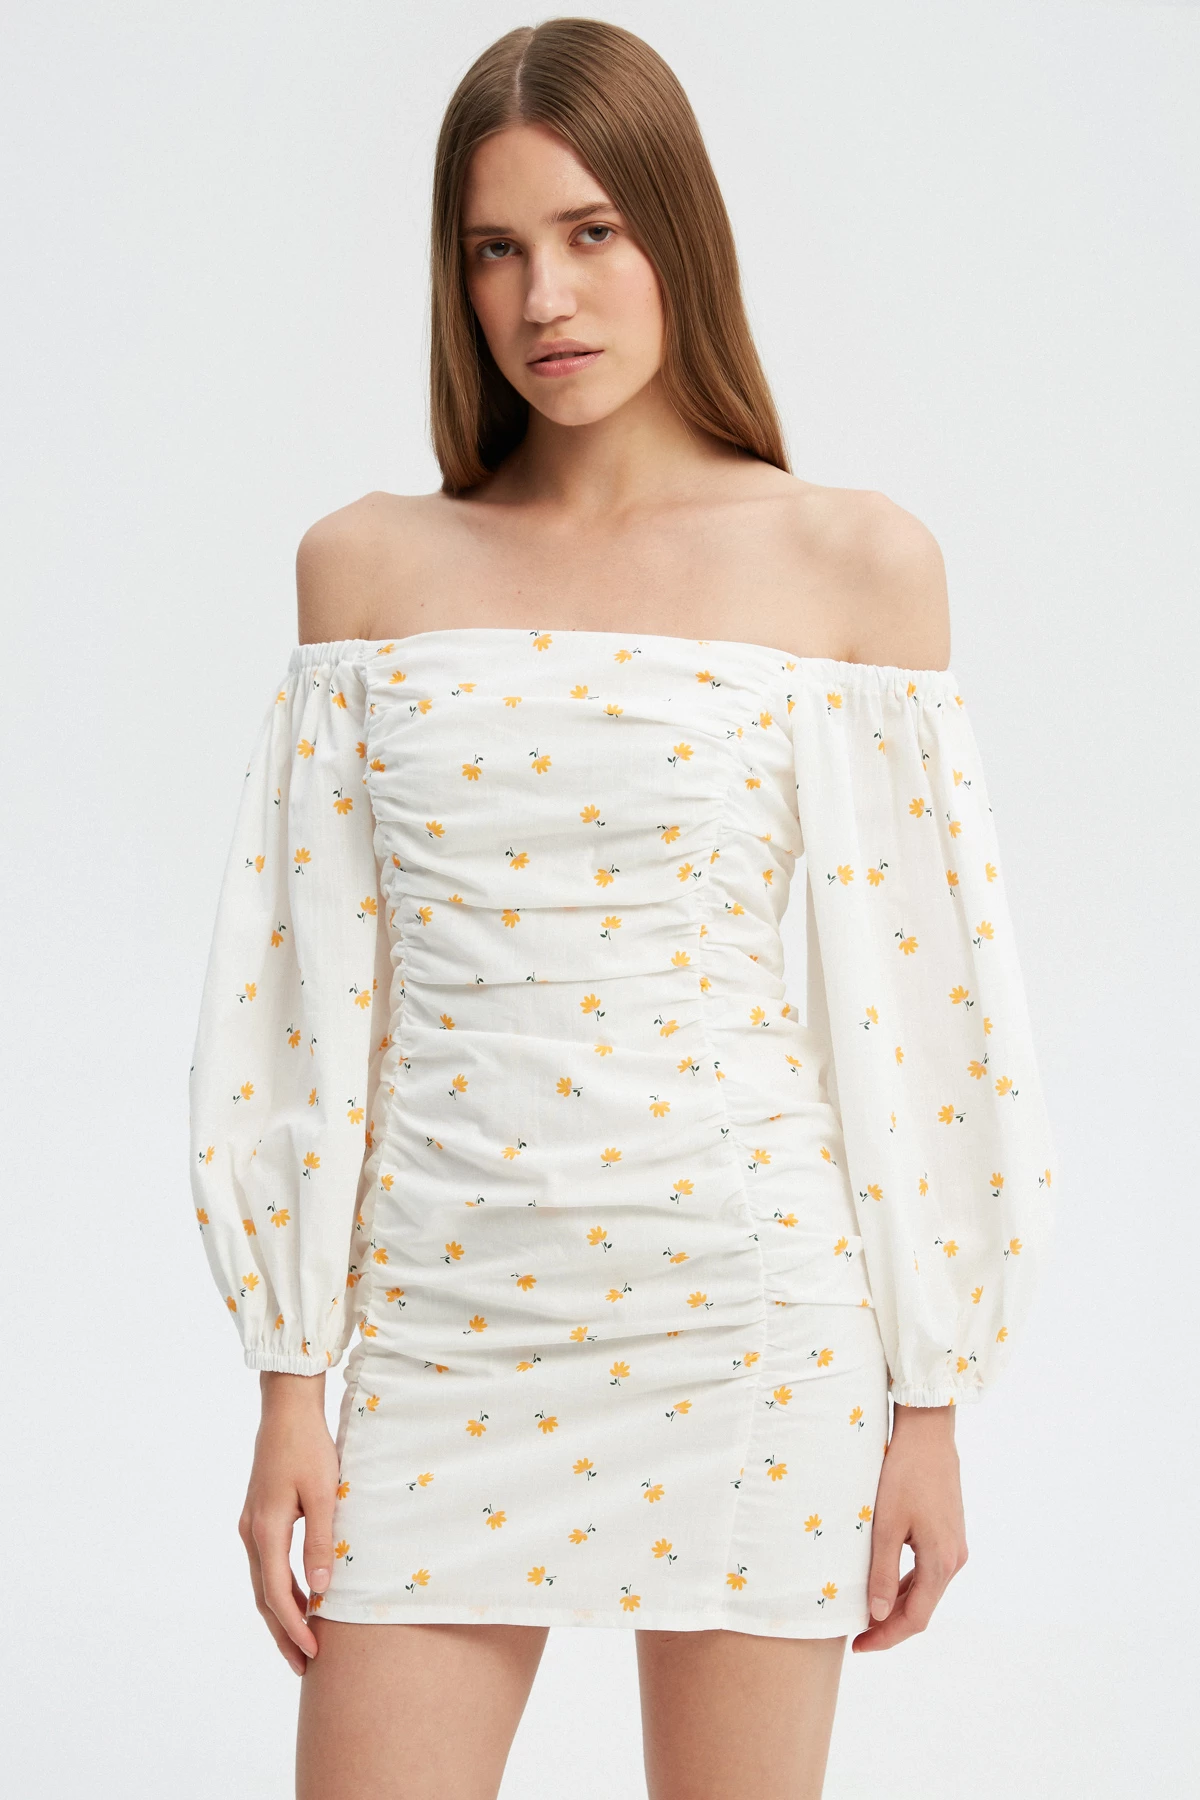 Біла сукня з драпіруванням з бавовни в авторський принт жовті квіти , фото 1